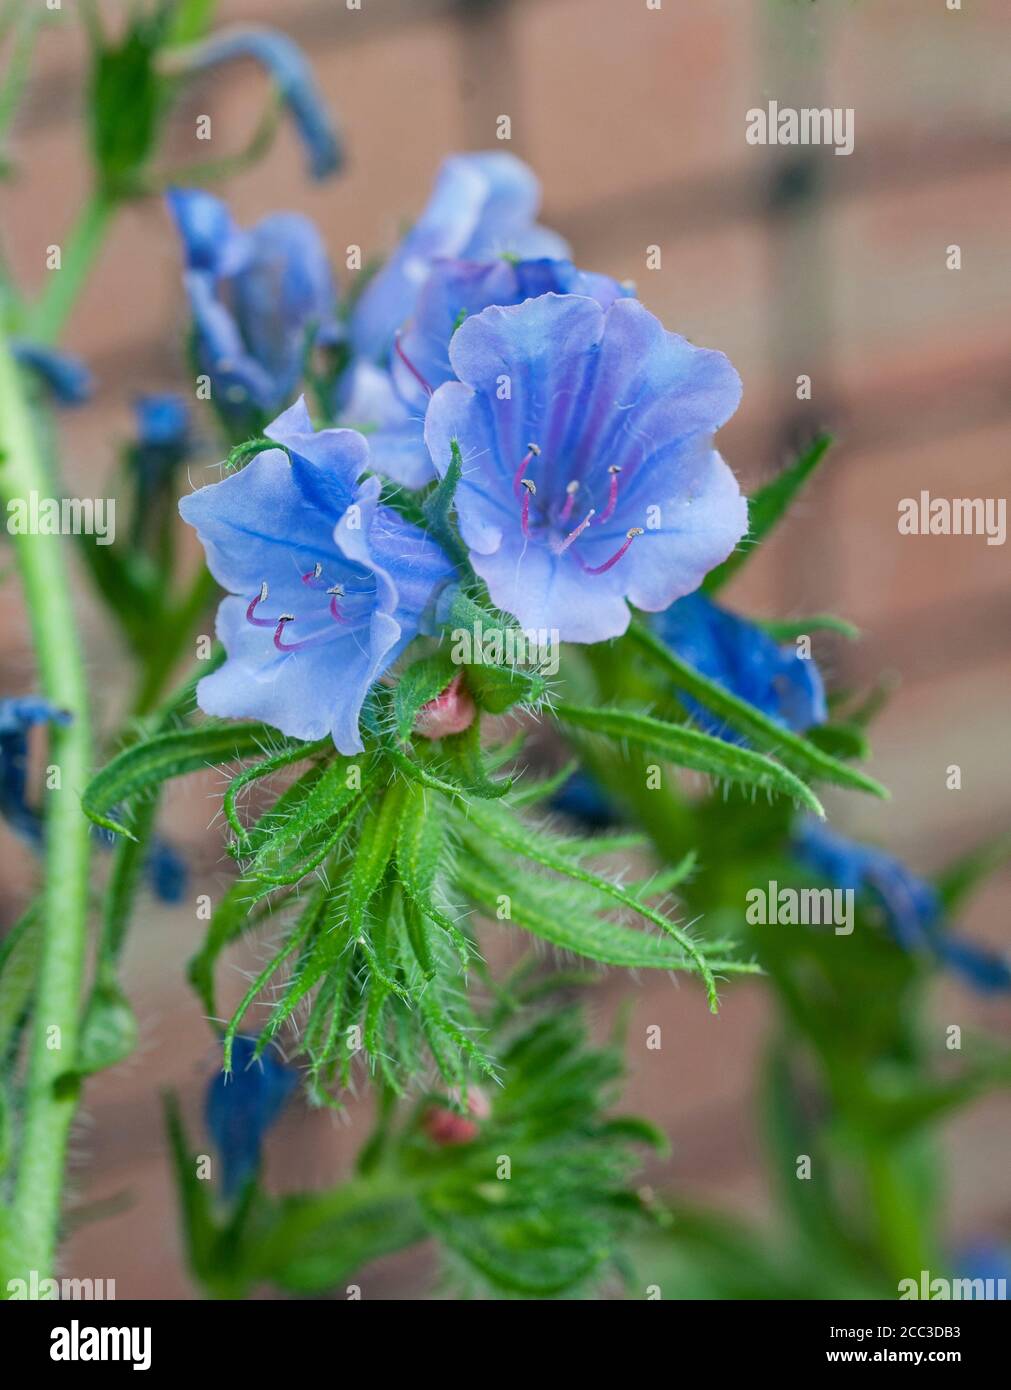 Primer plano de Echium vulgare Azul Bedder Vipers brillo un año duro - bienal con flores azules en verano que se auto semillas profusamente si se deja. Foto de stock